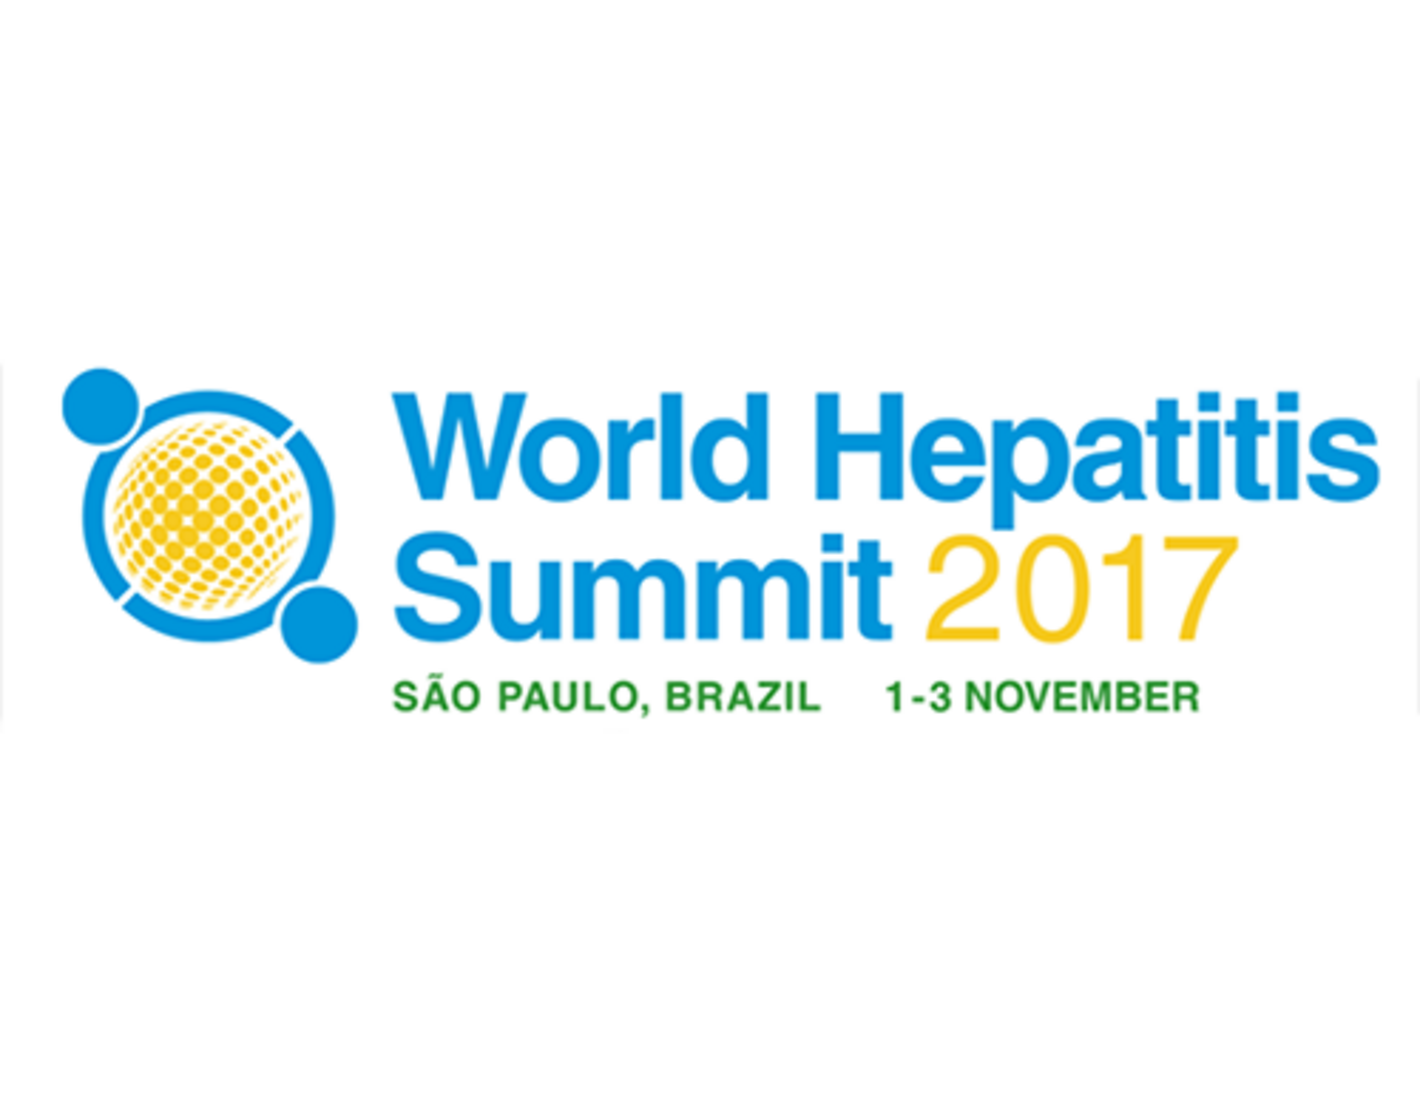 World Hepatitis Summit 2017